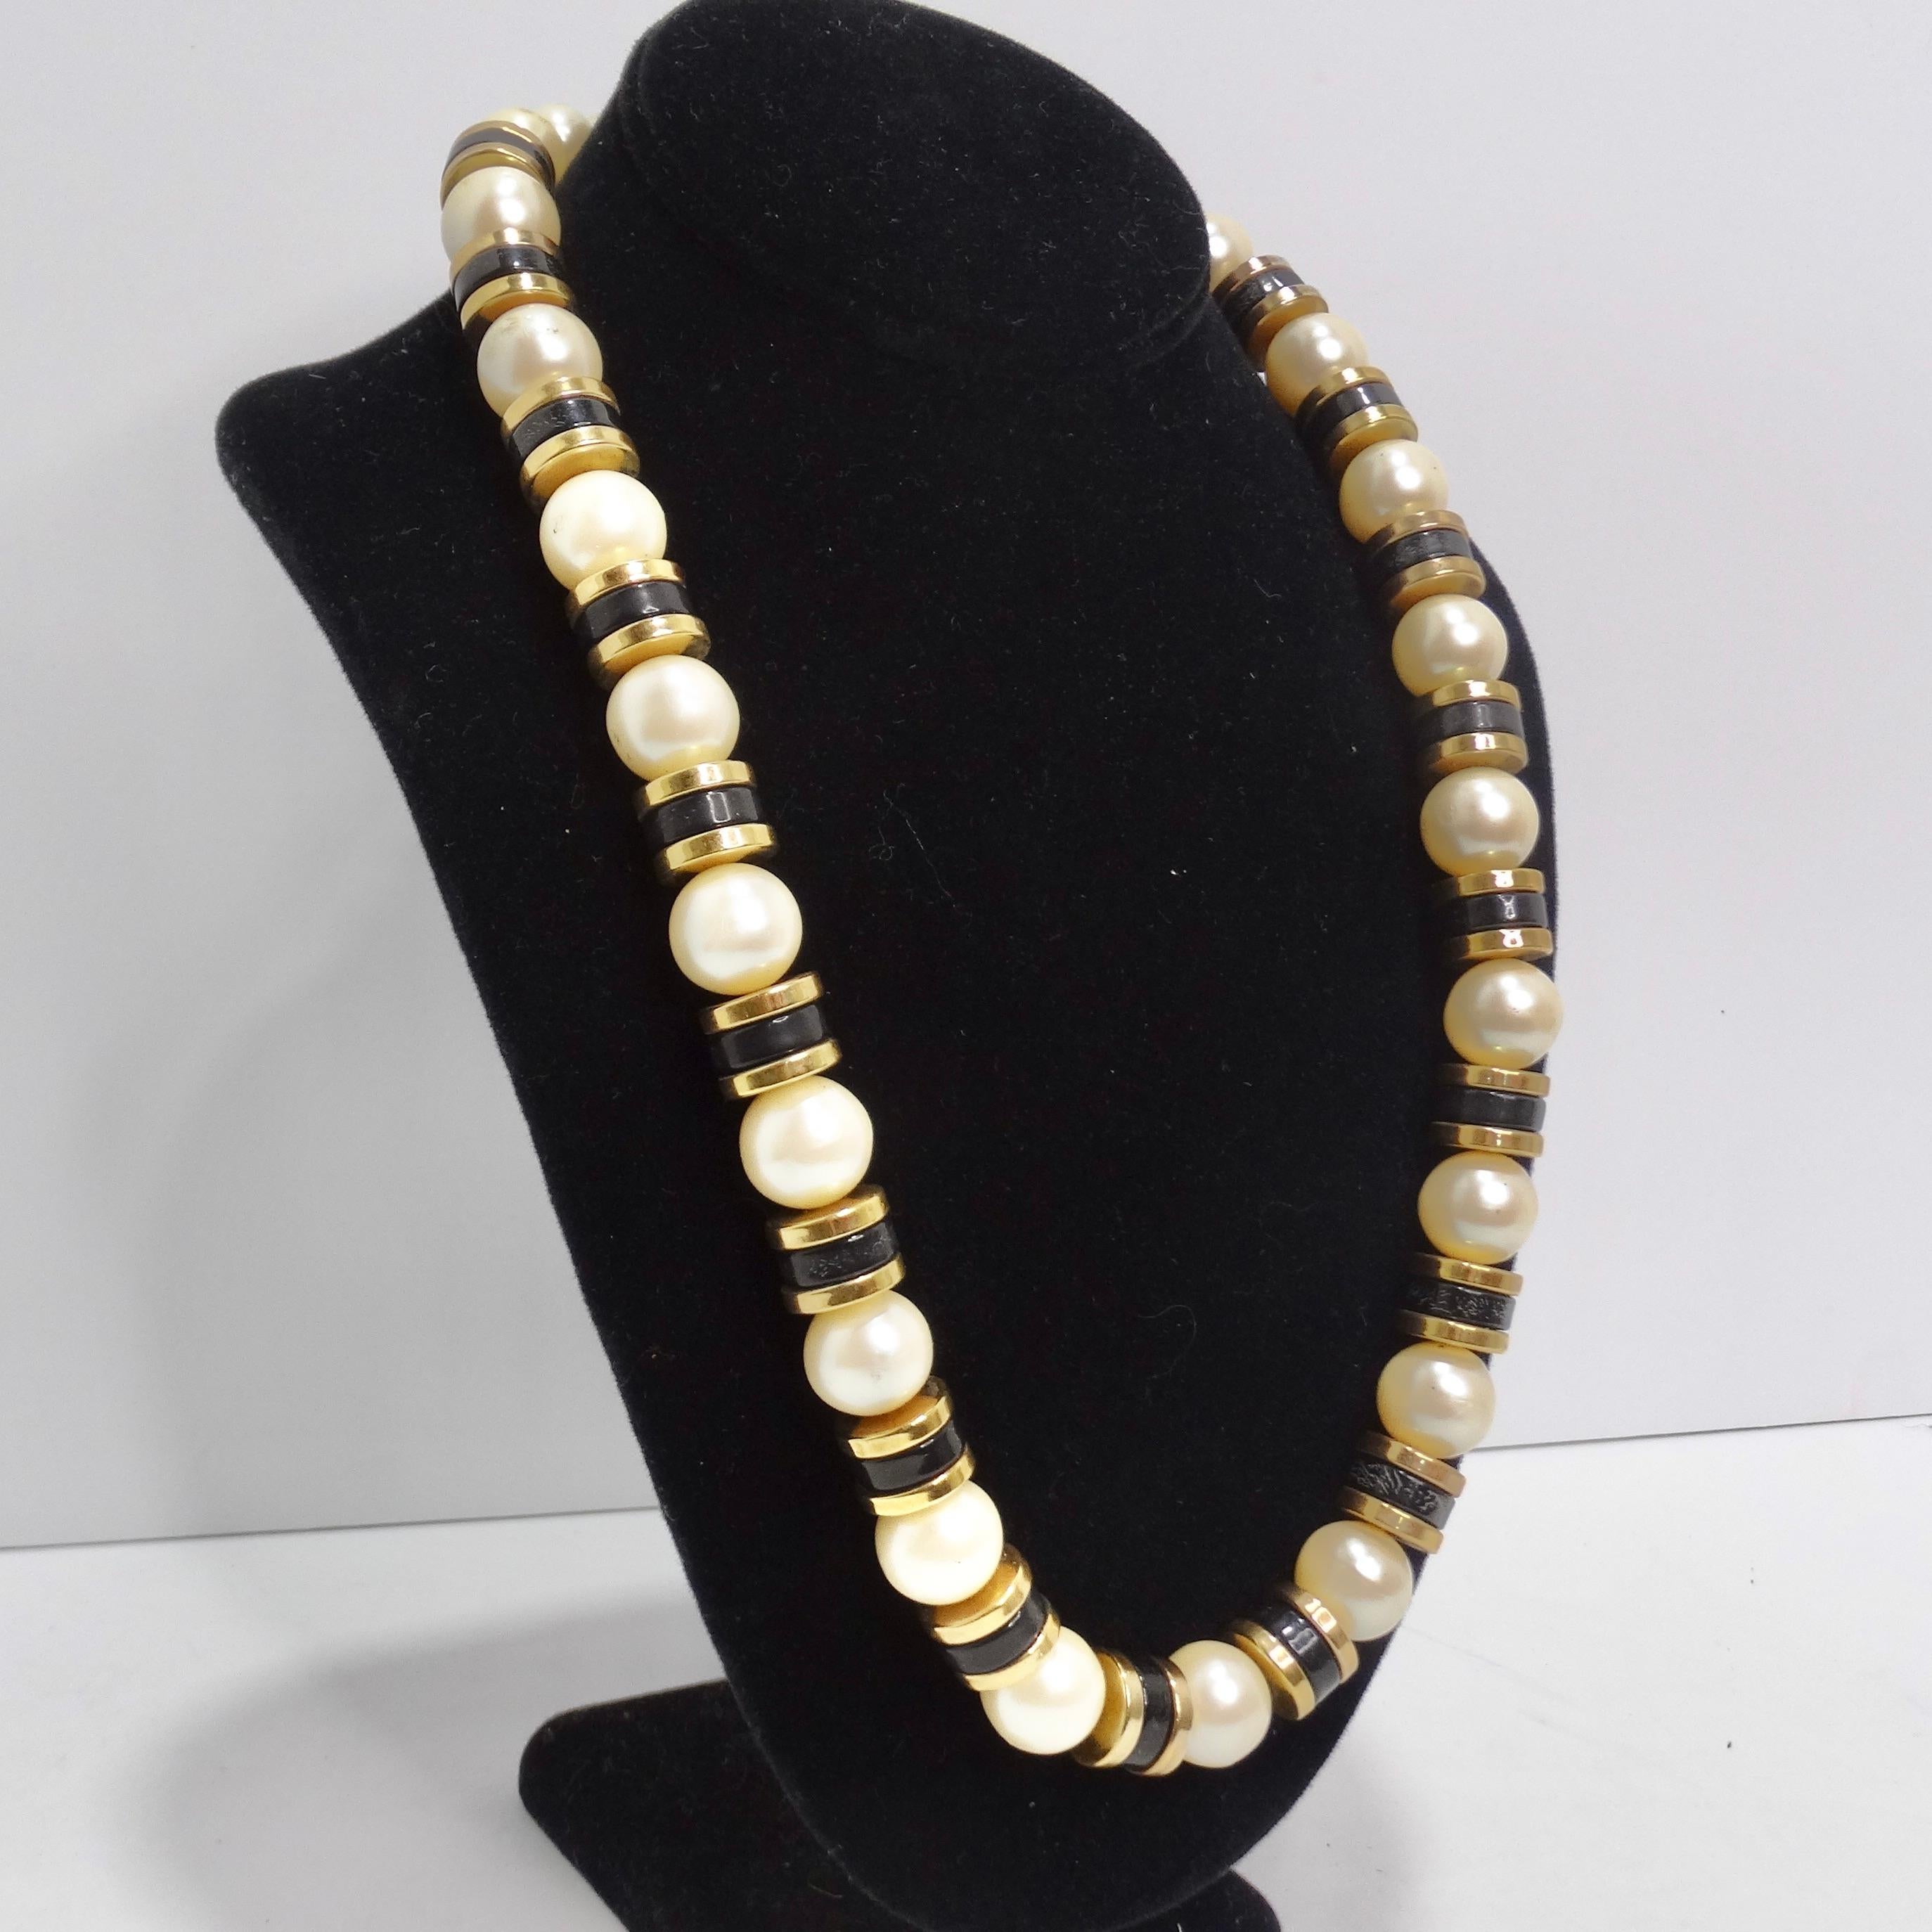 Entrez dans le monde de l'élégance vintage avec notre superbe collier de perles synthétiques des années 1970. Composé d'un mélange captivant de grosses perles synthétiques et de perles noires et plaquées or contrastantes, ce collier est un